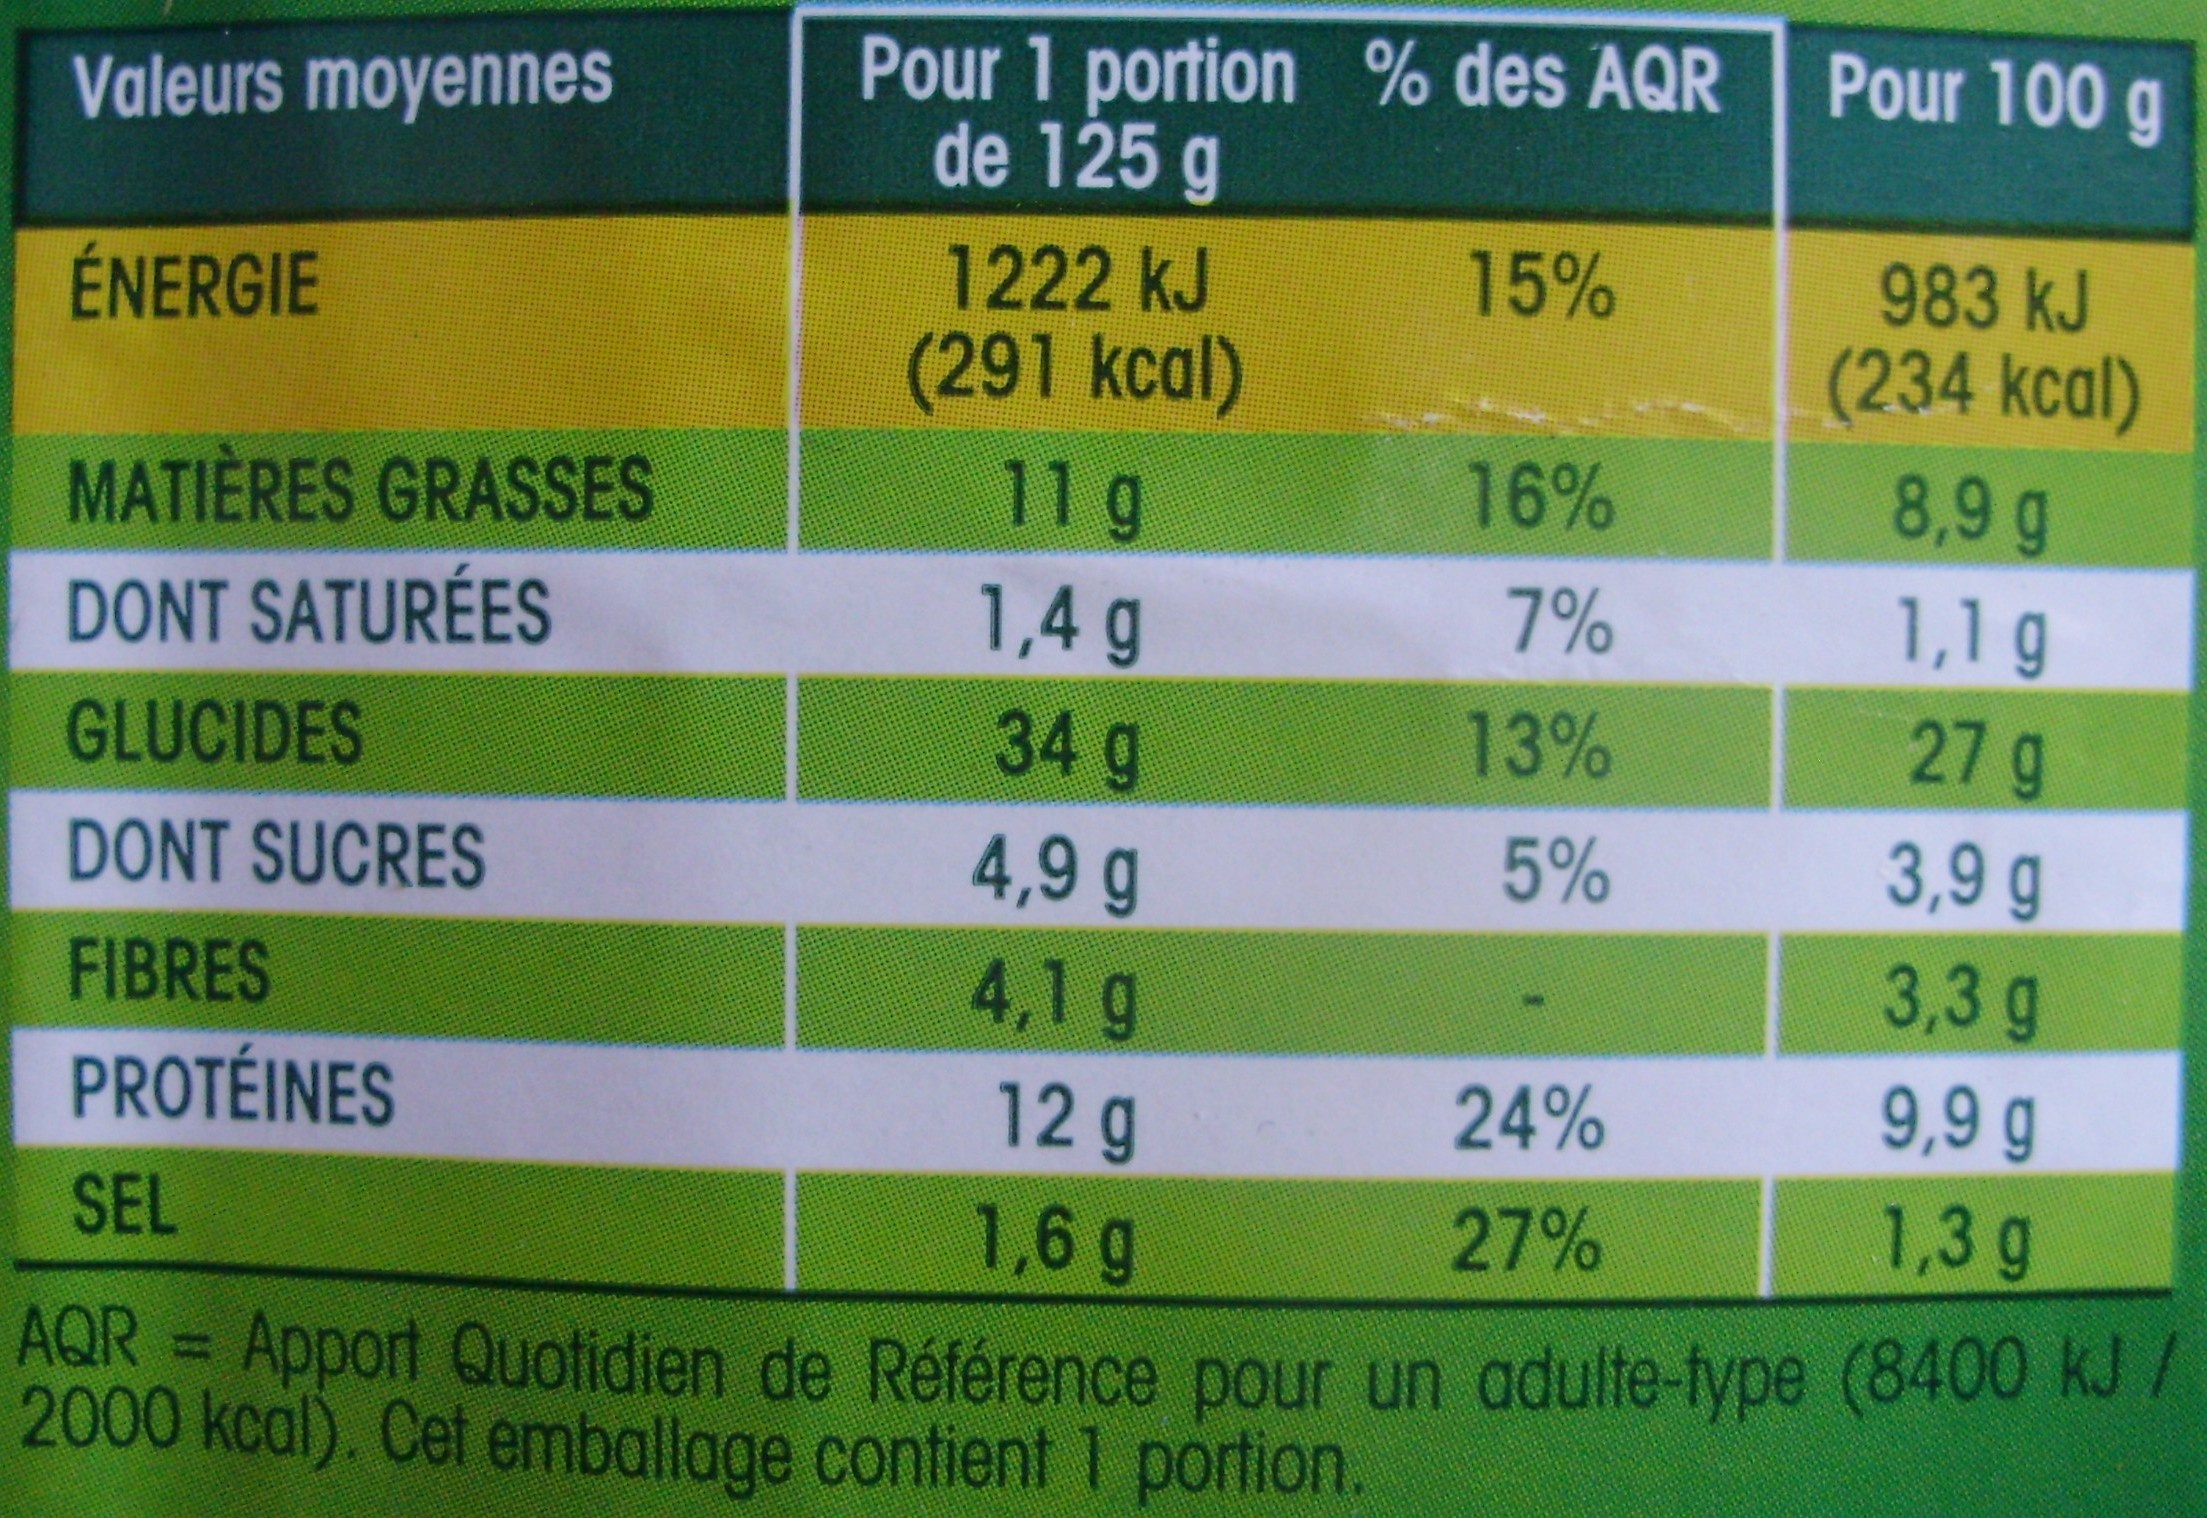 Sandwich Poulet rôti - Nutrition facts - fr